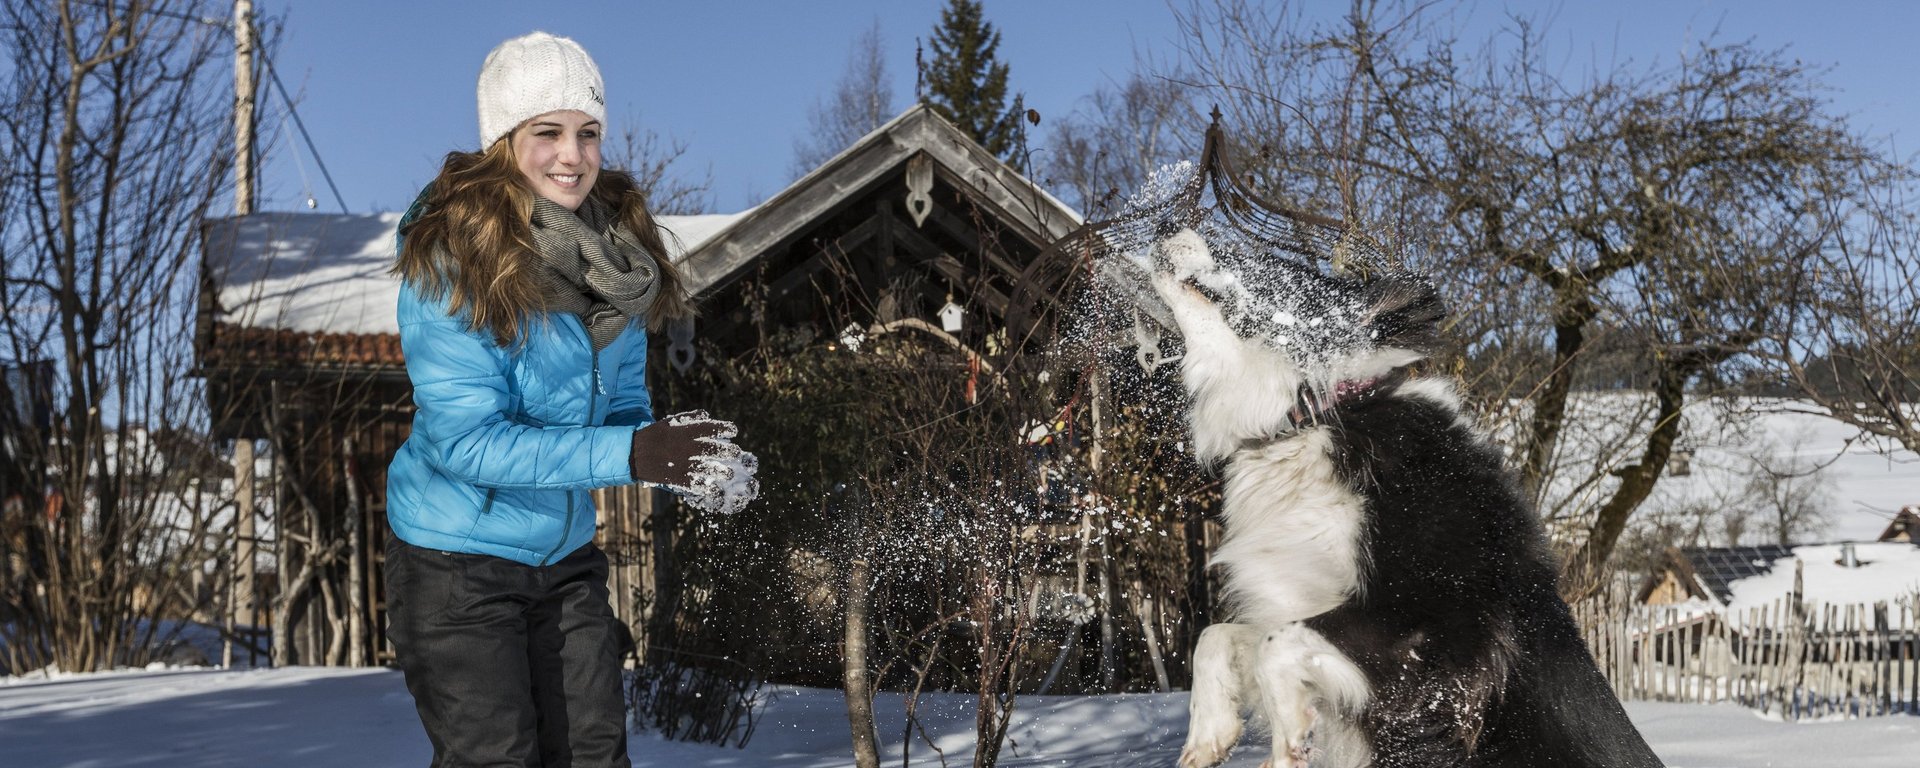 Winterurlaub mit dem Hund in Bayern